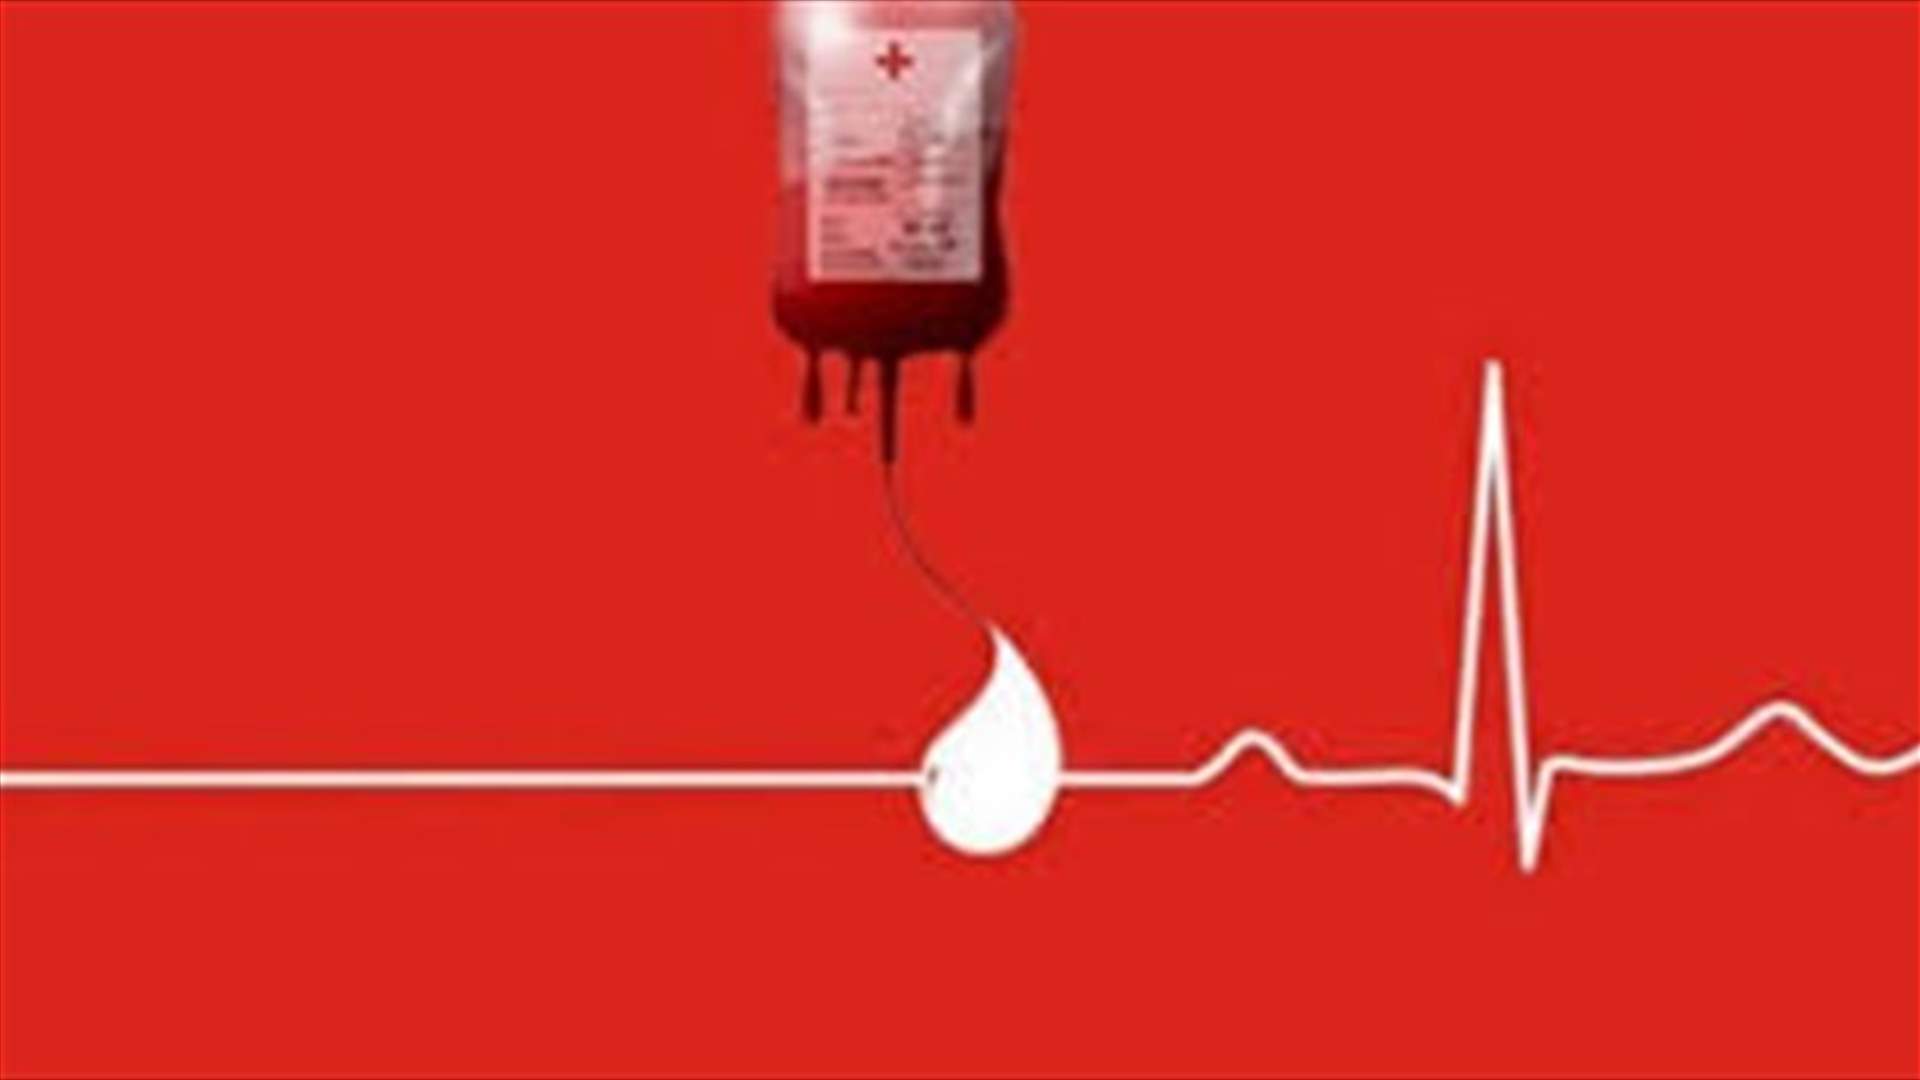 مريض بحاجة ماسّة لبلاكيت دم من كافة الفئات في مستشفى الجعيتاوي.. للتبرع: 70022445